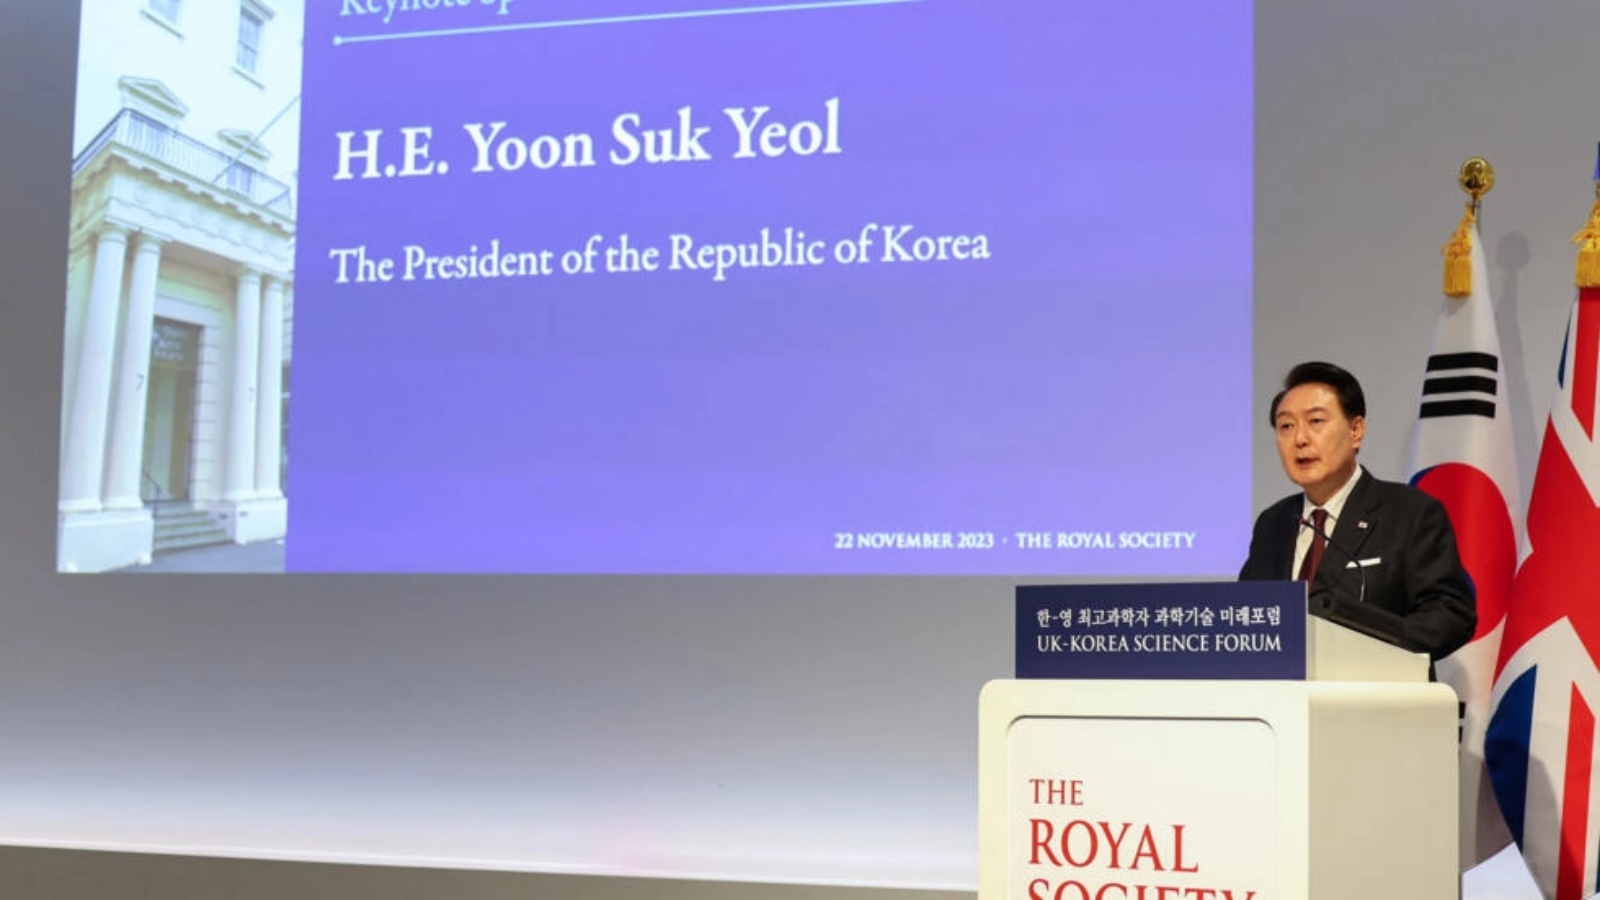 رئيس كوريا الجنوبية يون سوك يول خلال إلقائه خطاباً في لندن في 22 نوفمبر 2023 